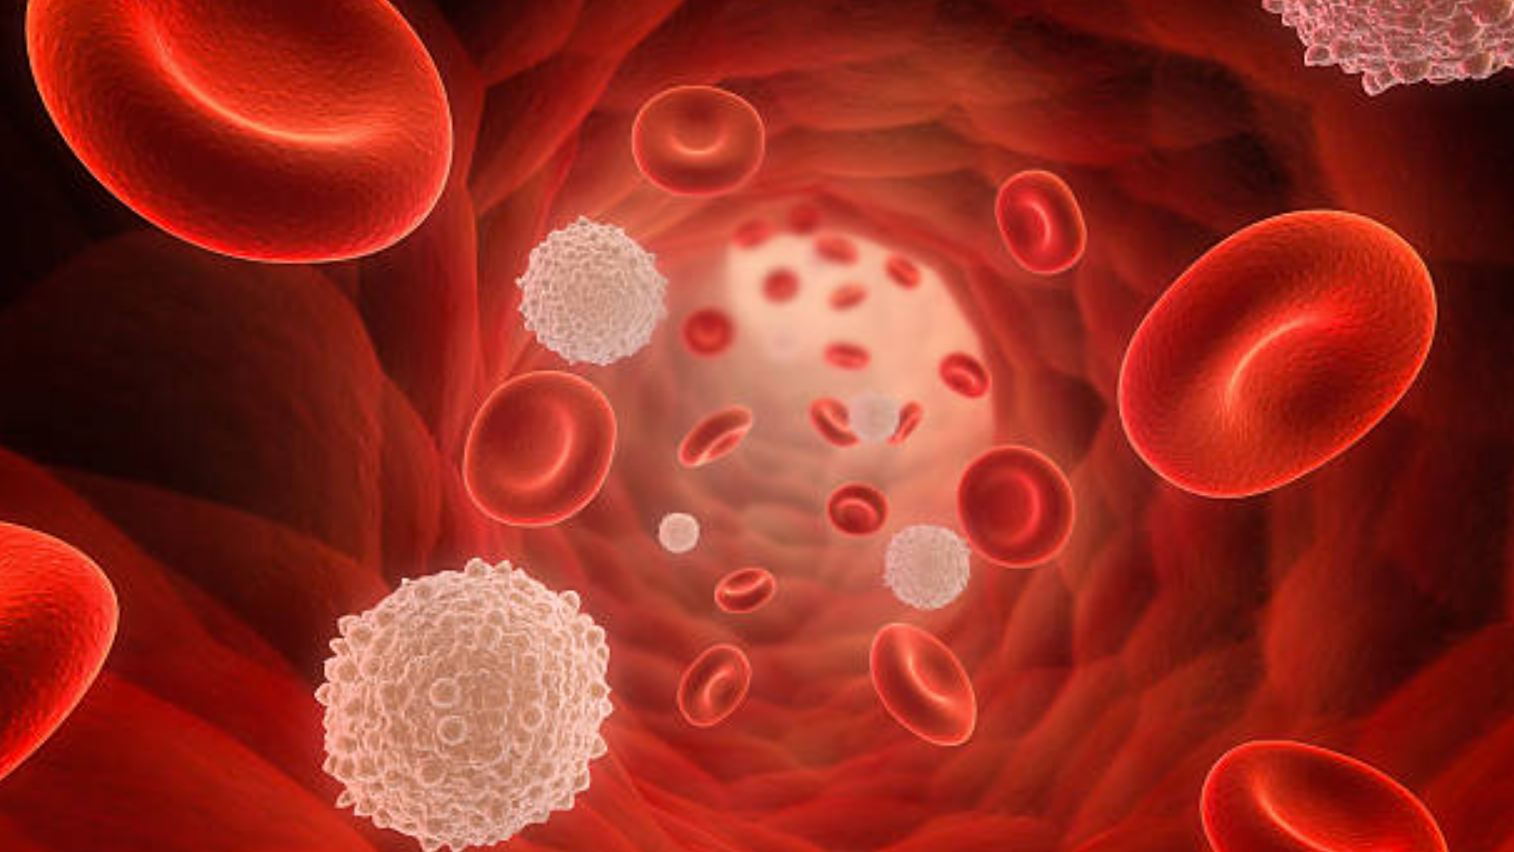 Nhóm máu O có ảnh hưởng đến khả năng điều trị các bệnh không?
